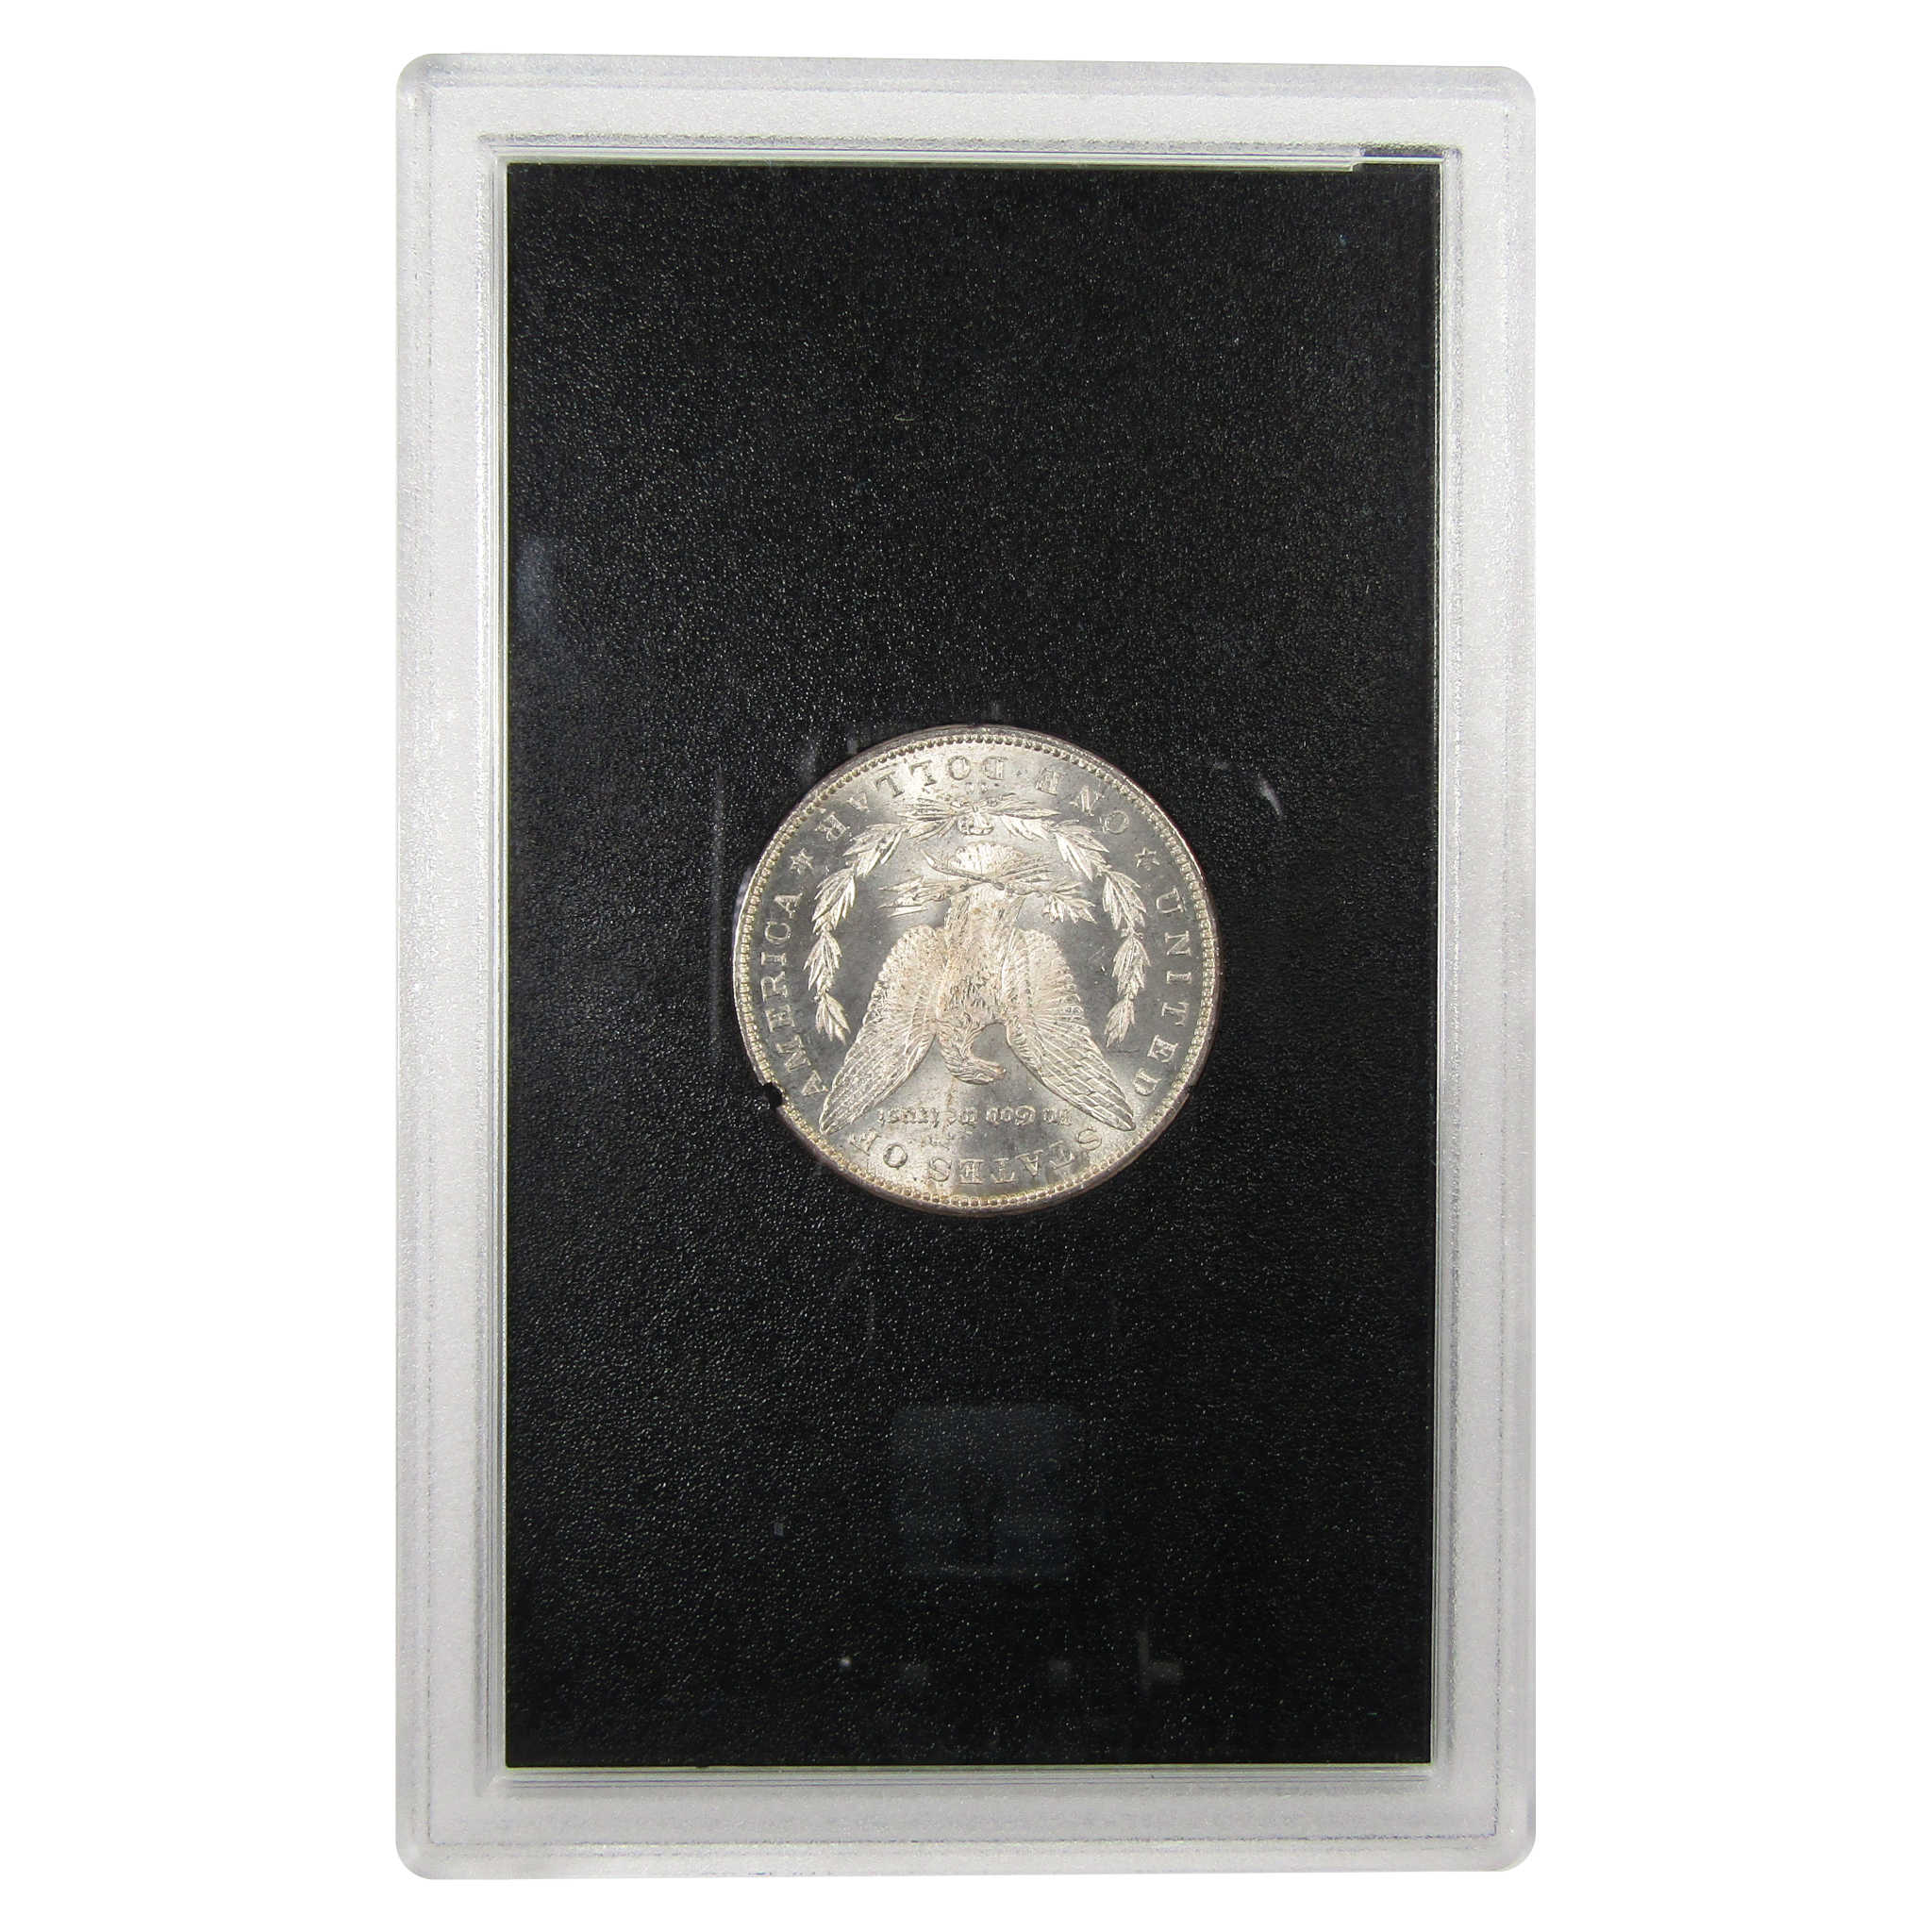 1882 CC GSA Morgan Dollar BU Uncirculated Silver $1 Coin SKU:I9863 - Morgan coin - Morgan silver dollar - Morgan silver dollar for sale - Profile Coins &amp; Collectibles